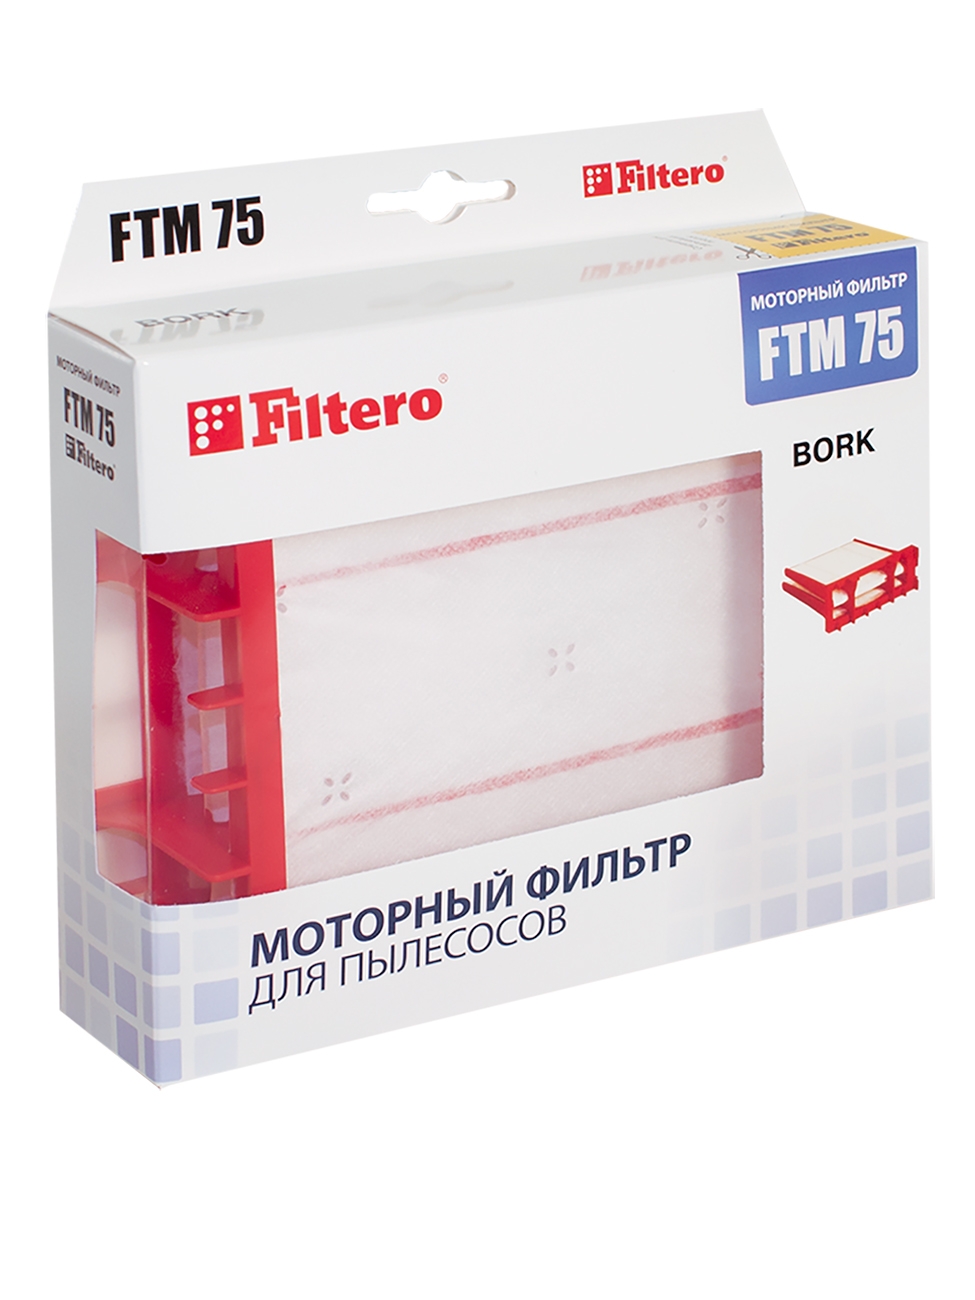 Фильтр моторный Filtero FTM 75 BRK Bork фильтр filtero ftm 04 sam моторный